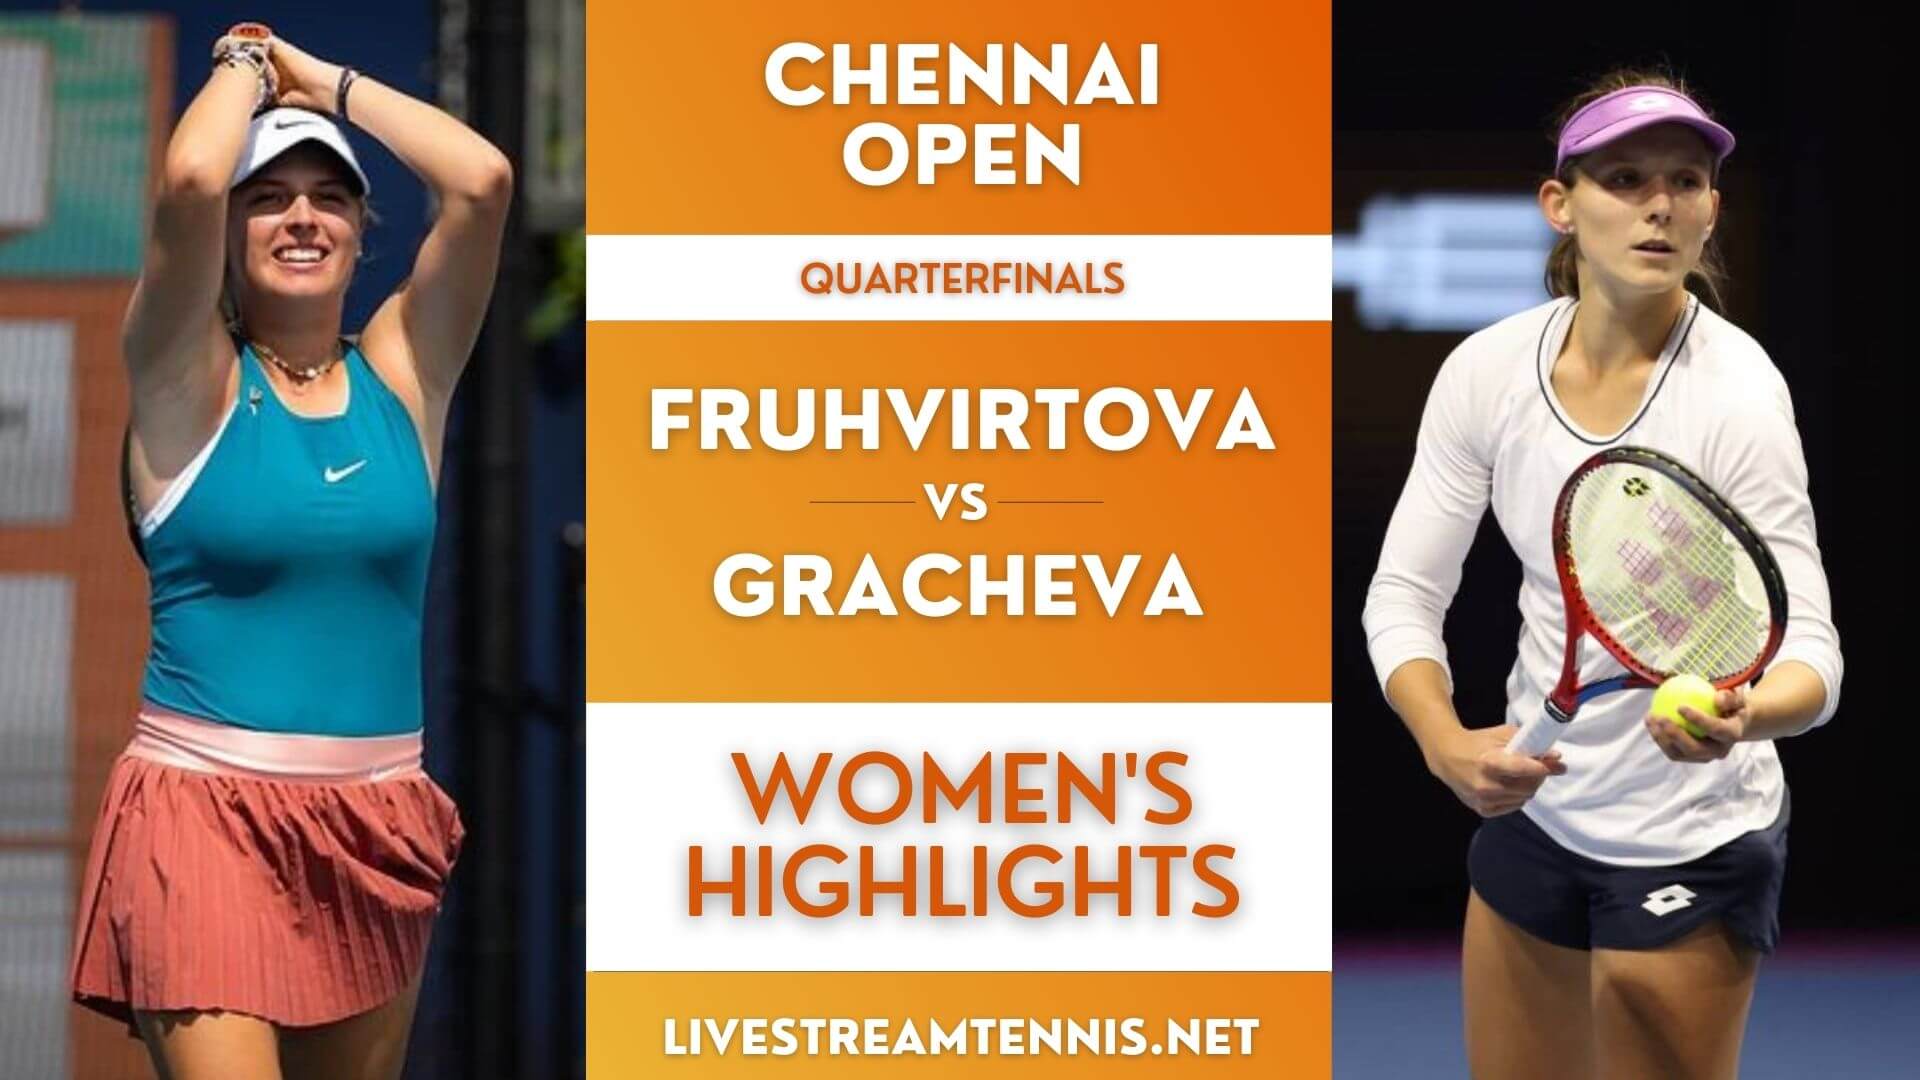 Chennai Open Women Quarterfinal 2 Highlights 2022